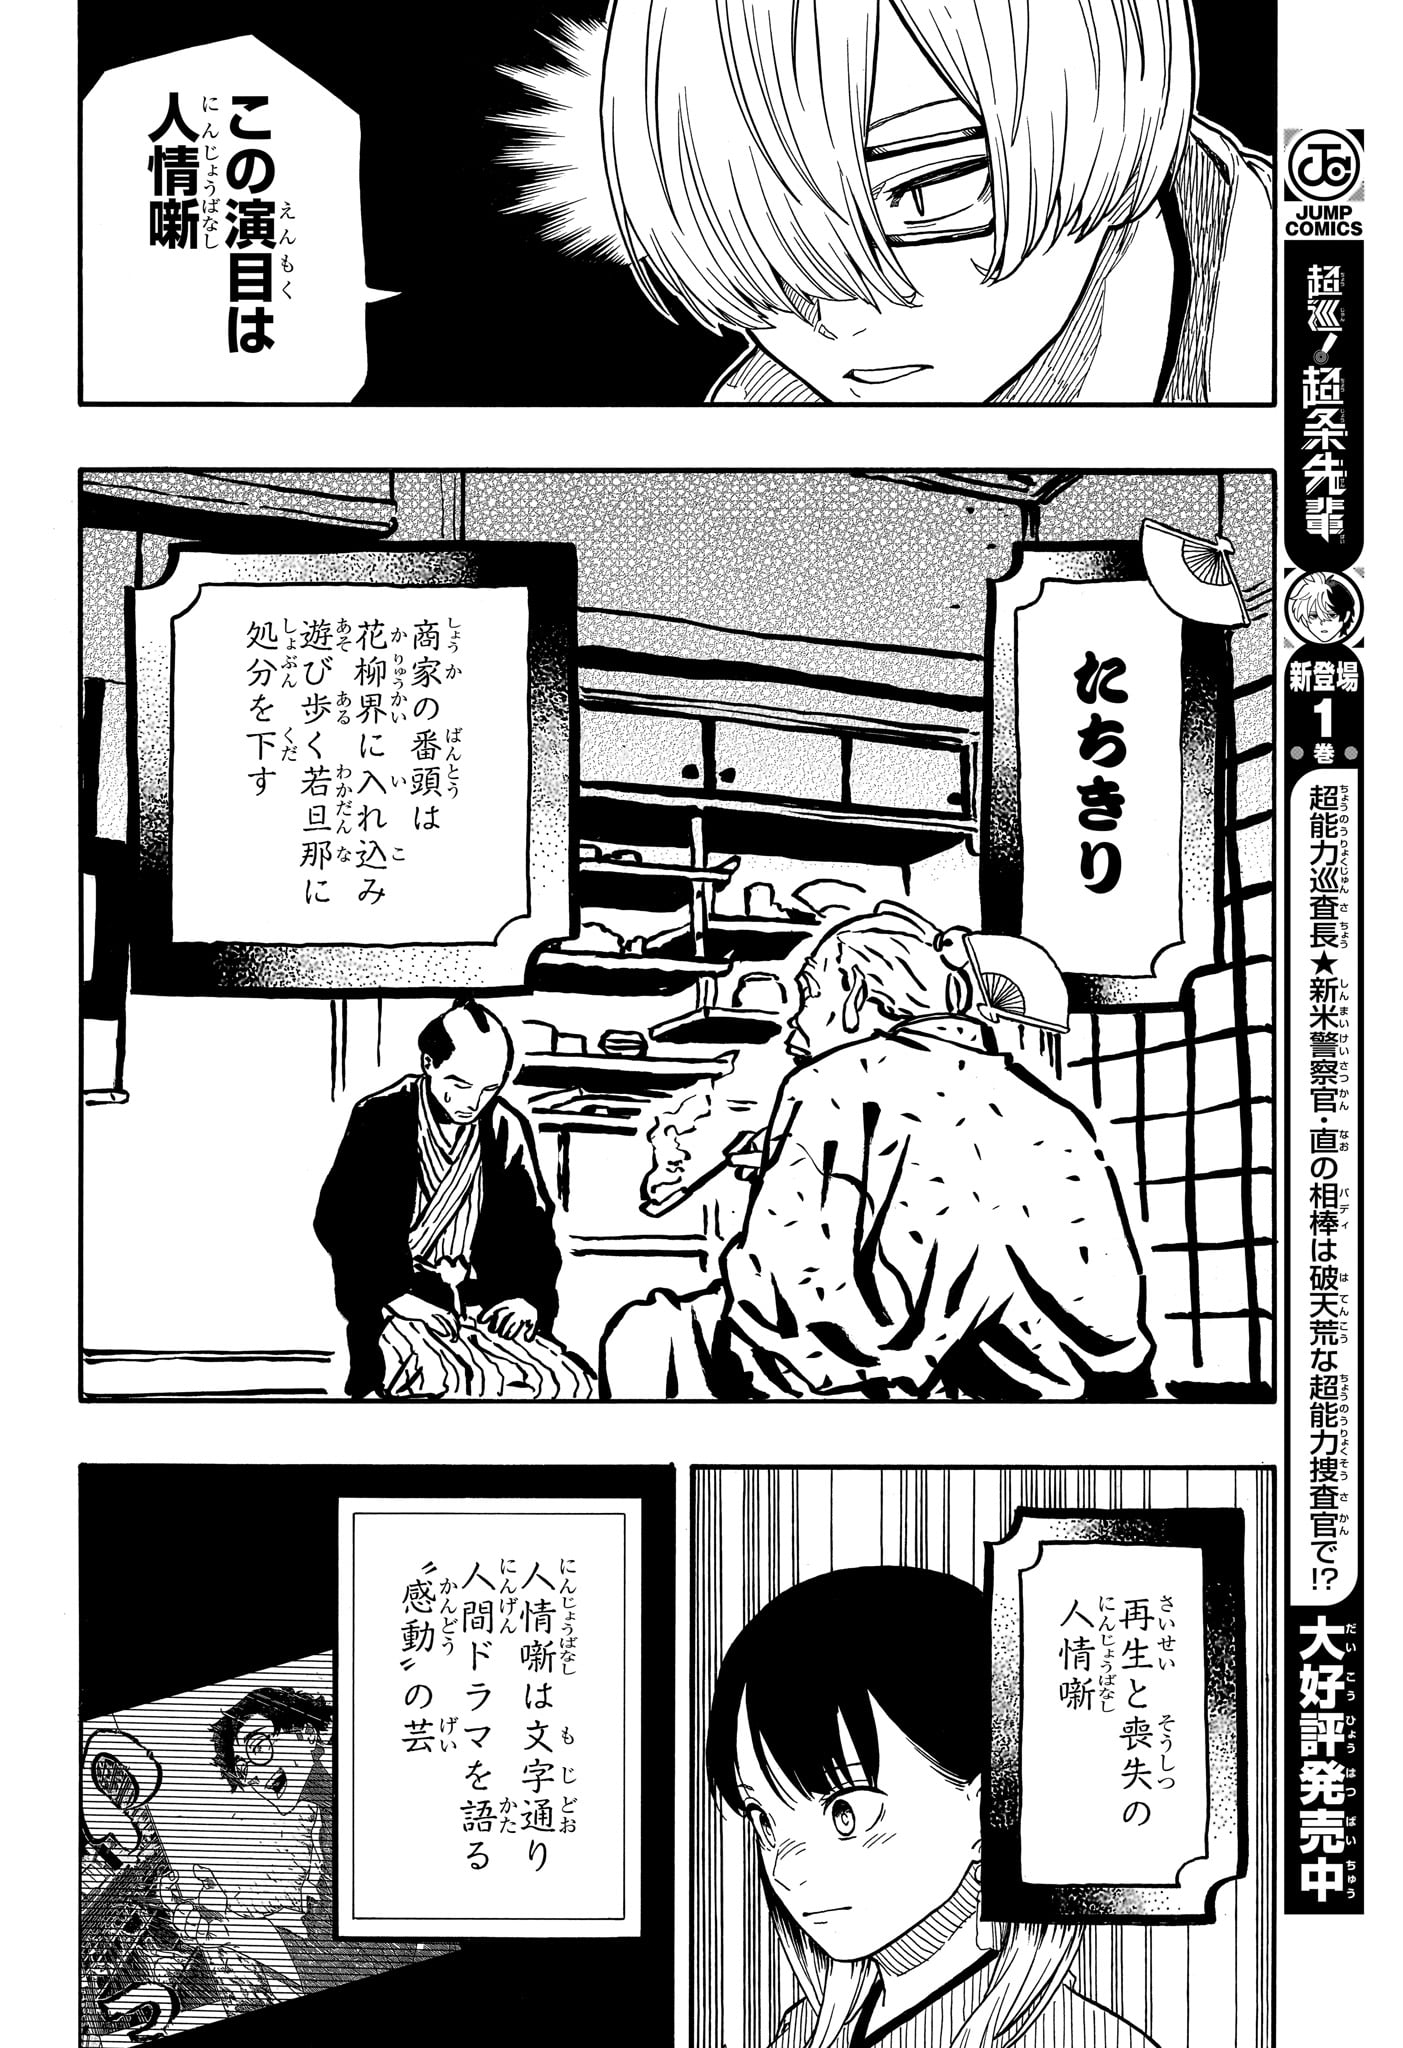 Akane-Banashi - Chapter 113 - Page 6